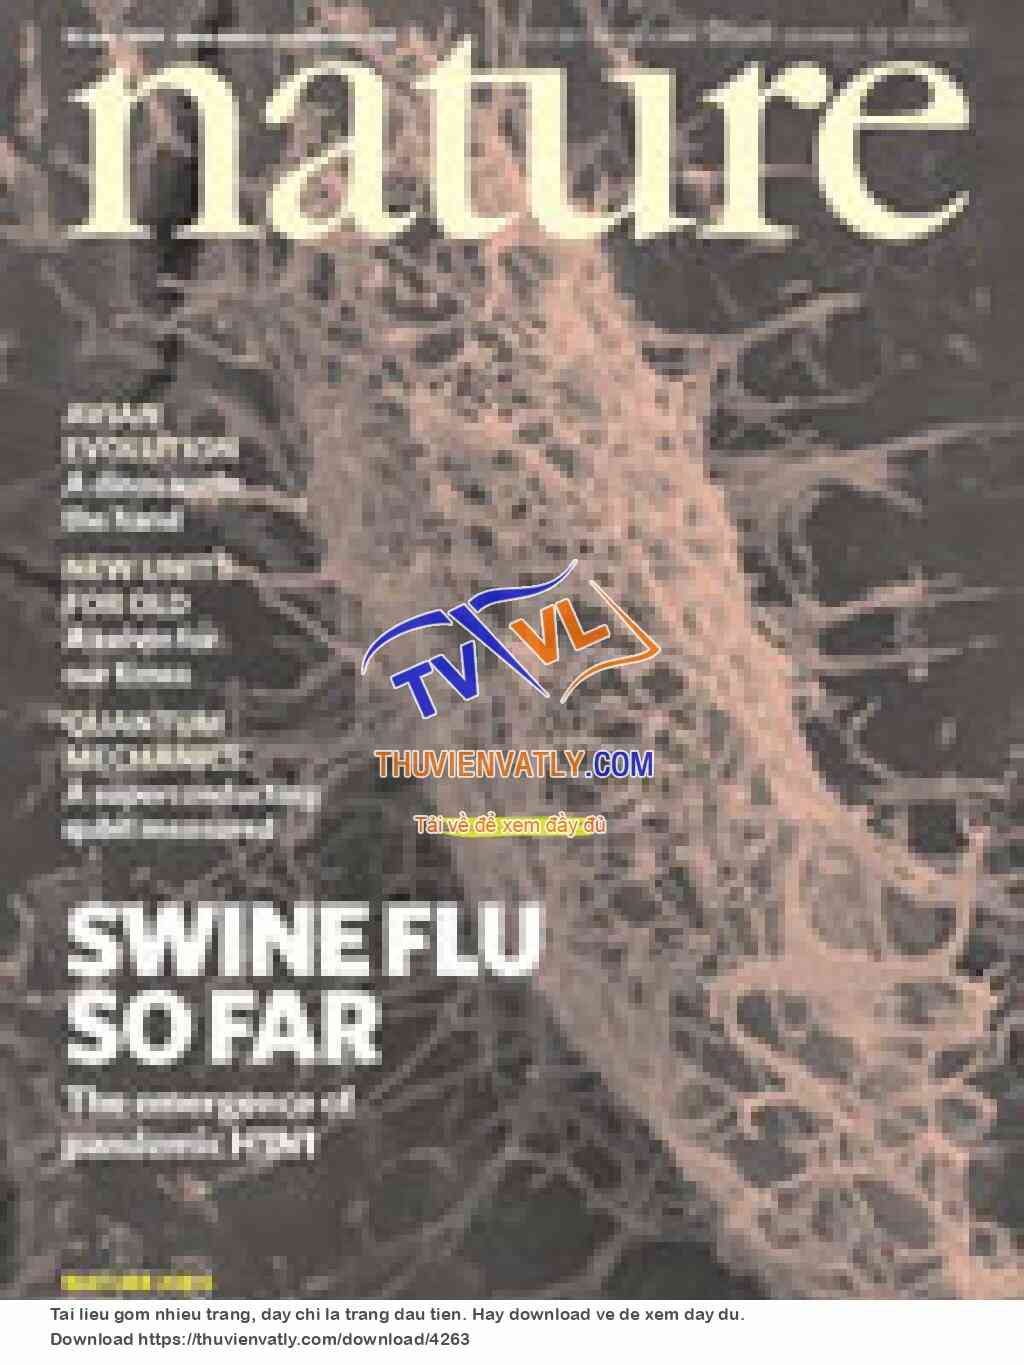 Nature Magazine - June 18 2009